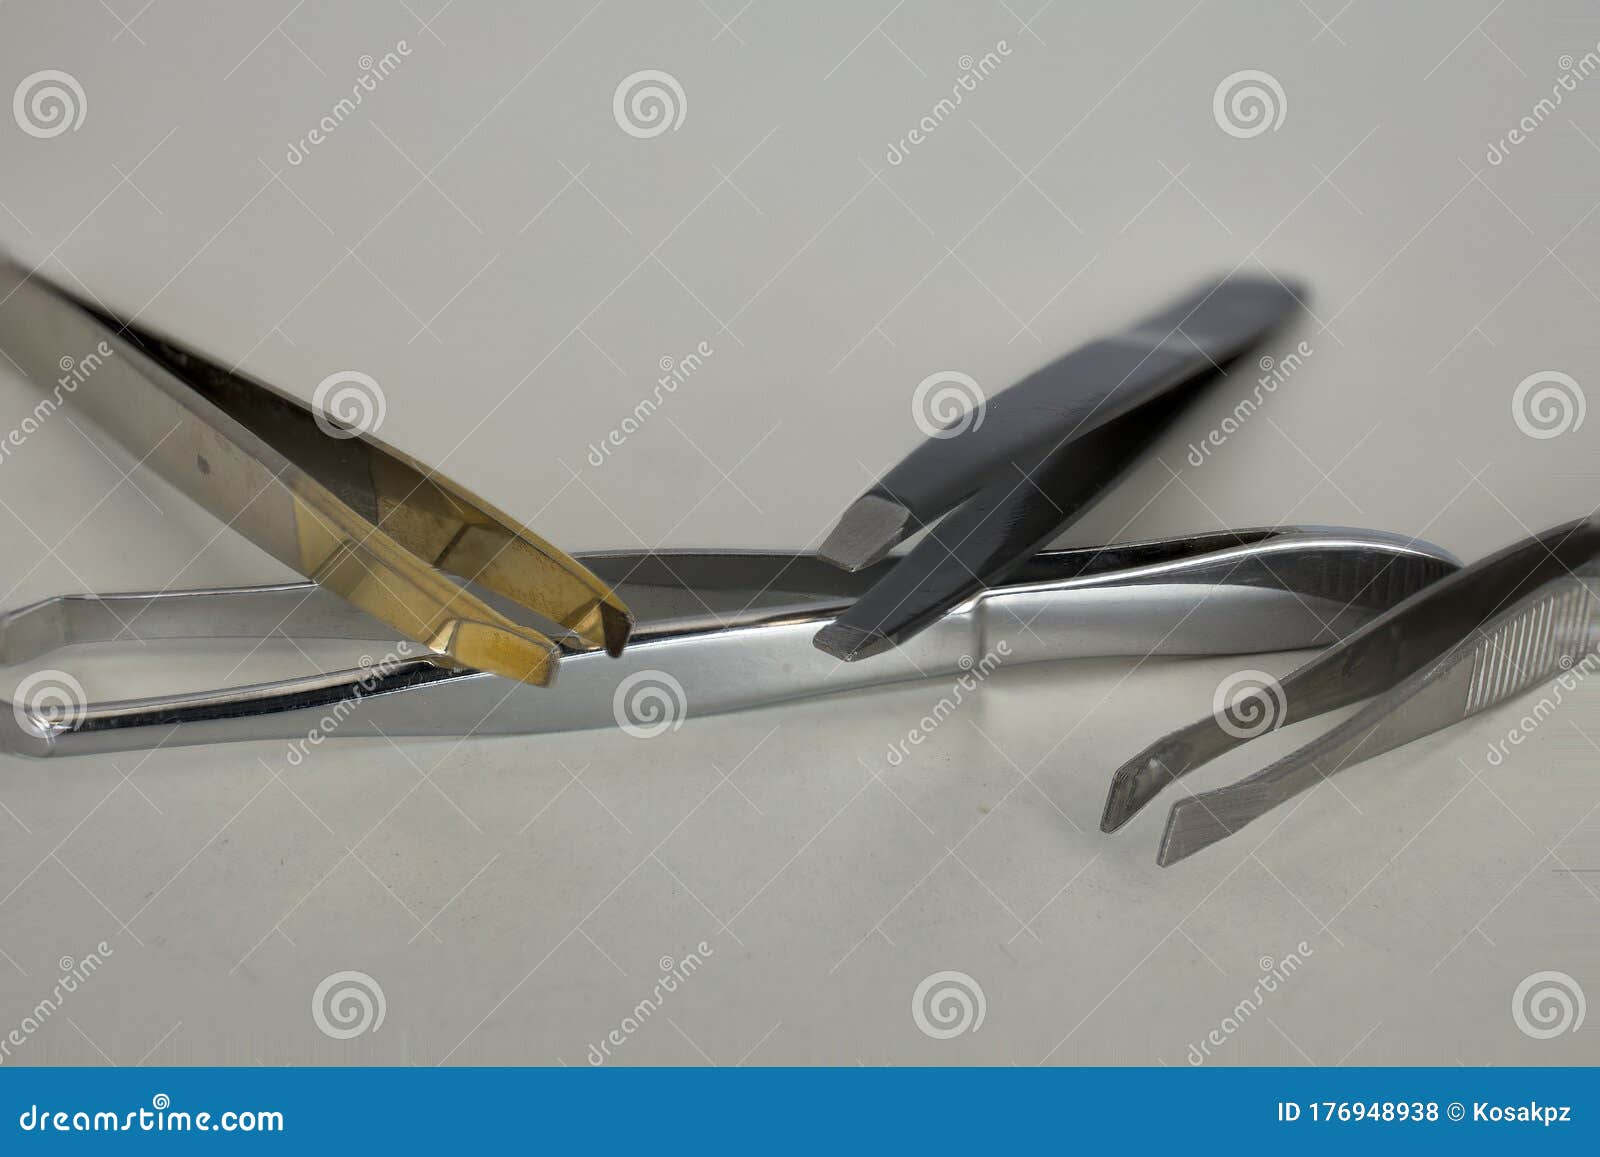 Various Metal Hair Removal Tweezers Stock Photo - Image of hygiene, tool:  176948938